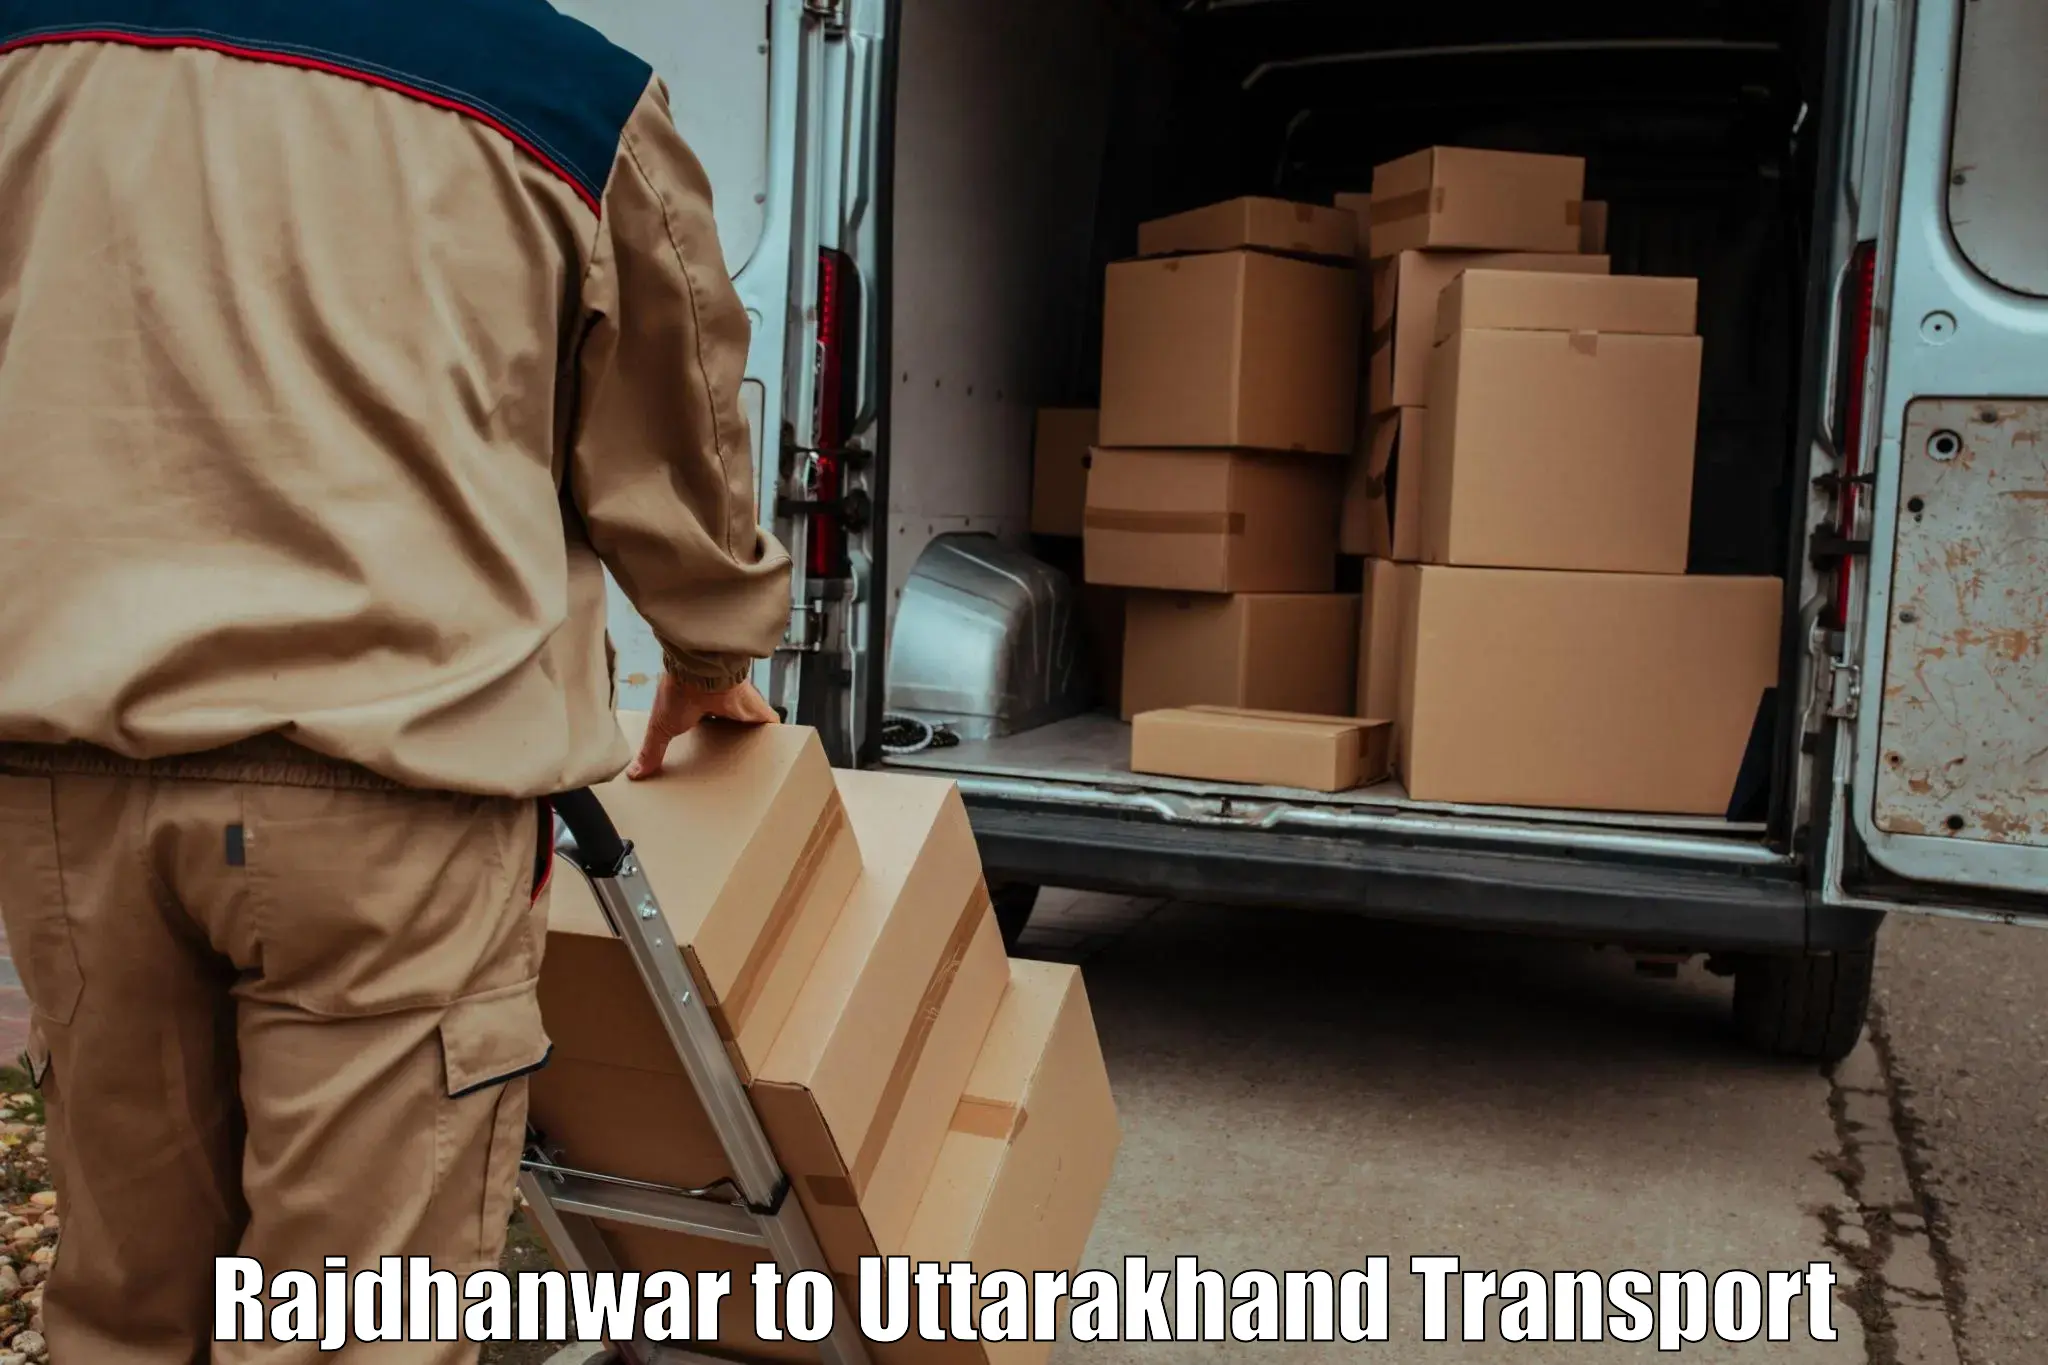 Lorry transport service Rajdhanwar to Haridwar